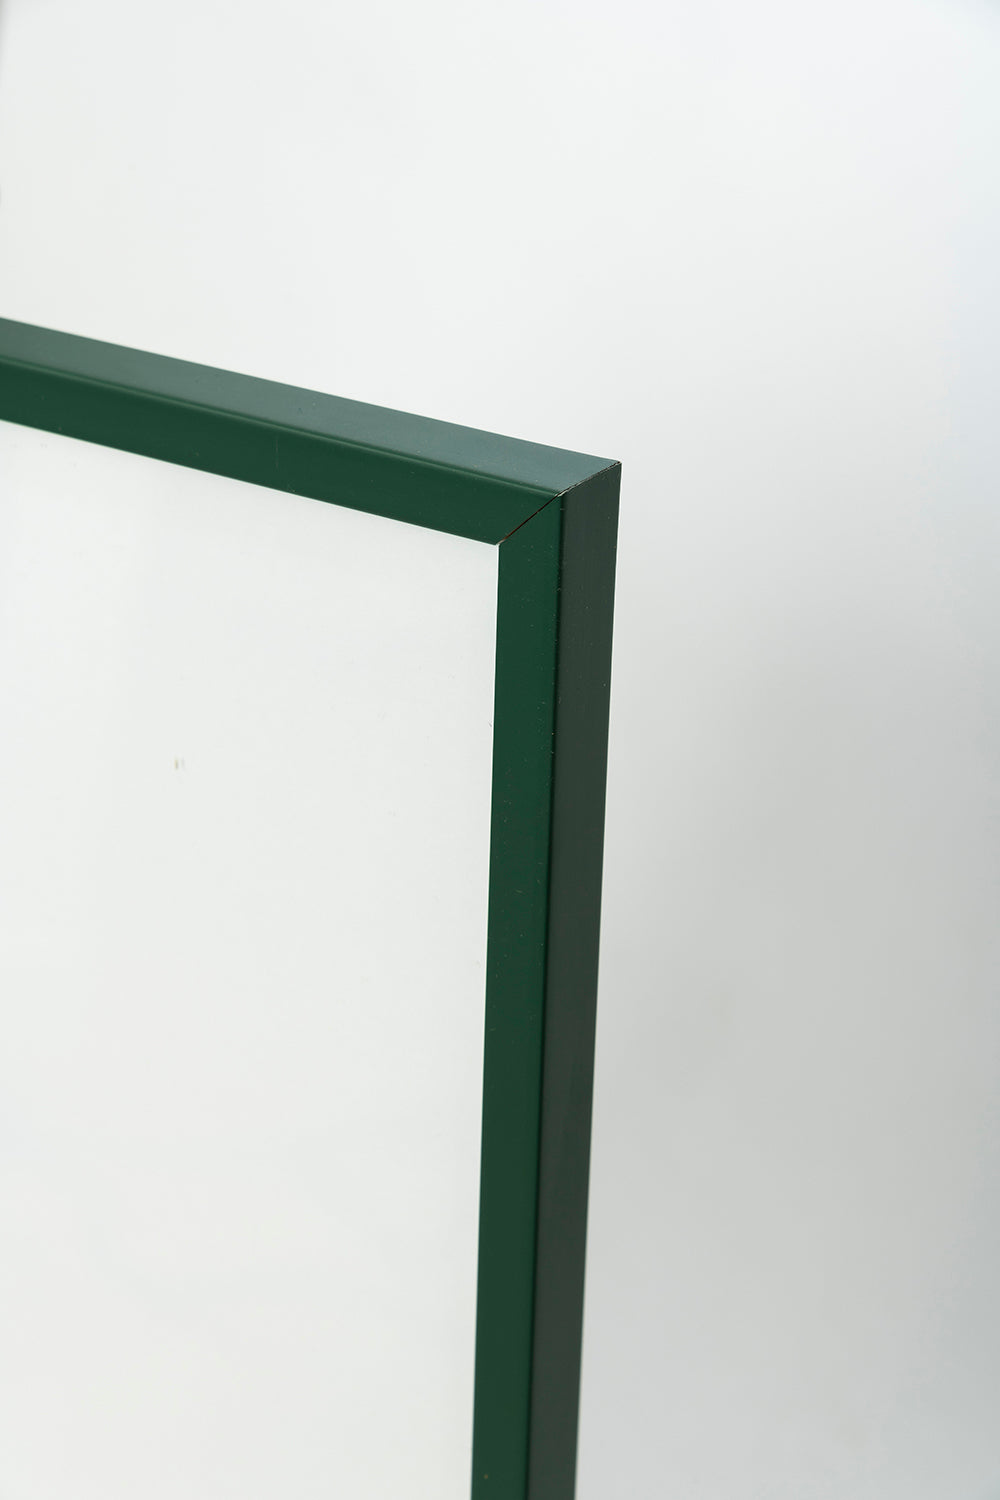 Green Frame with Plexiglass